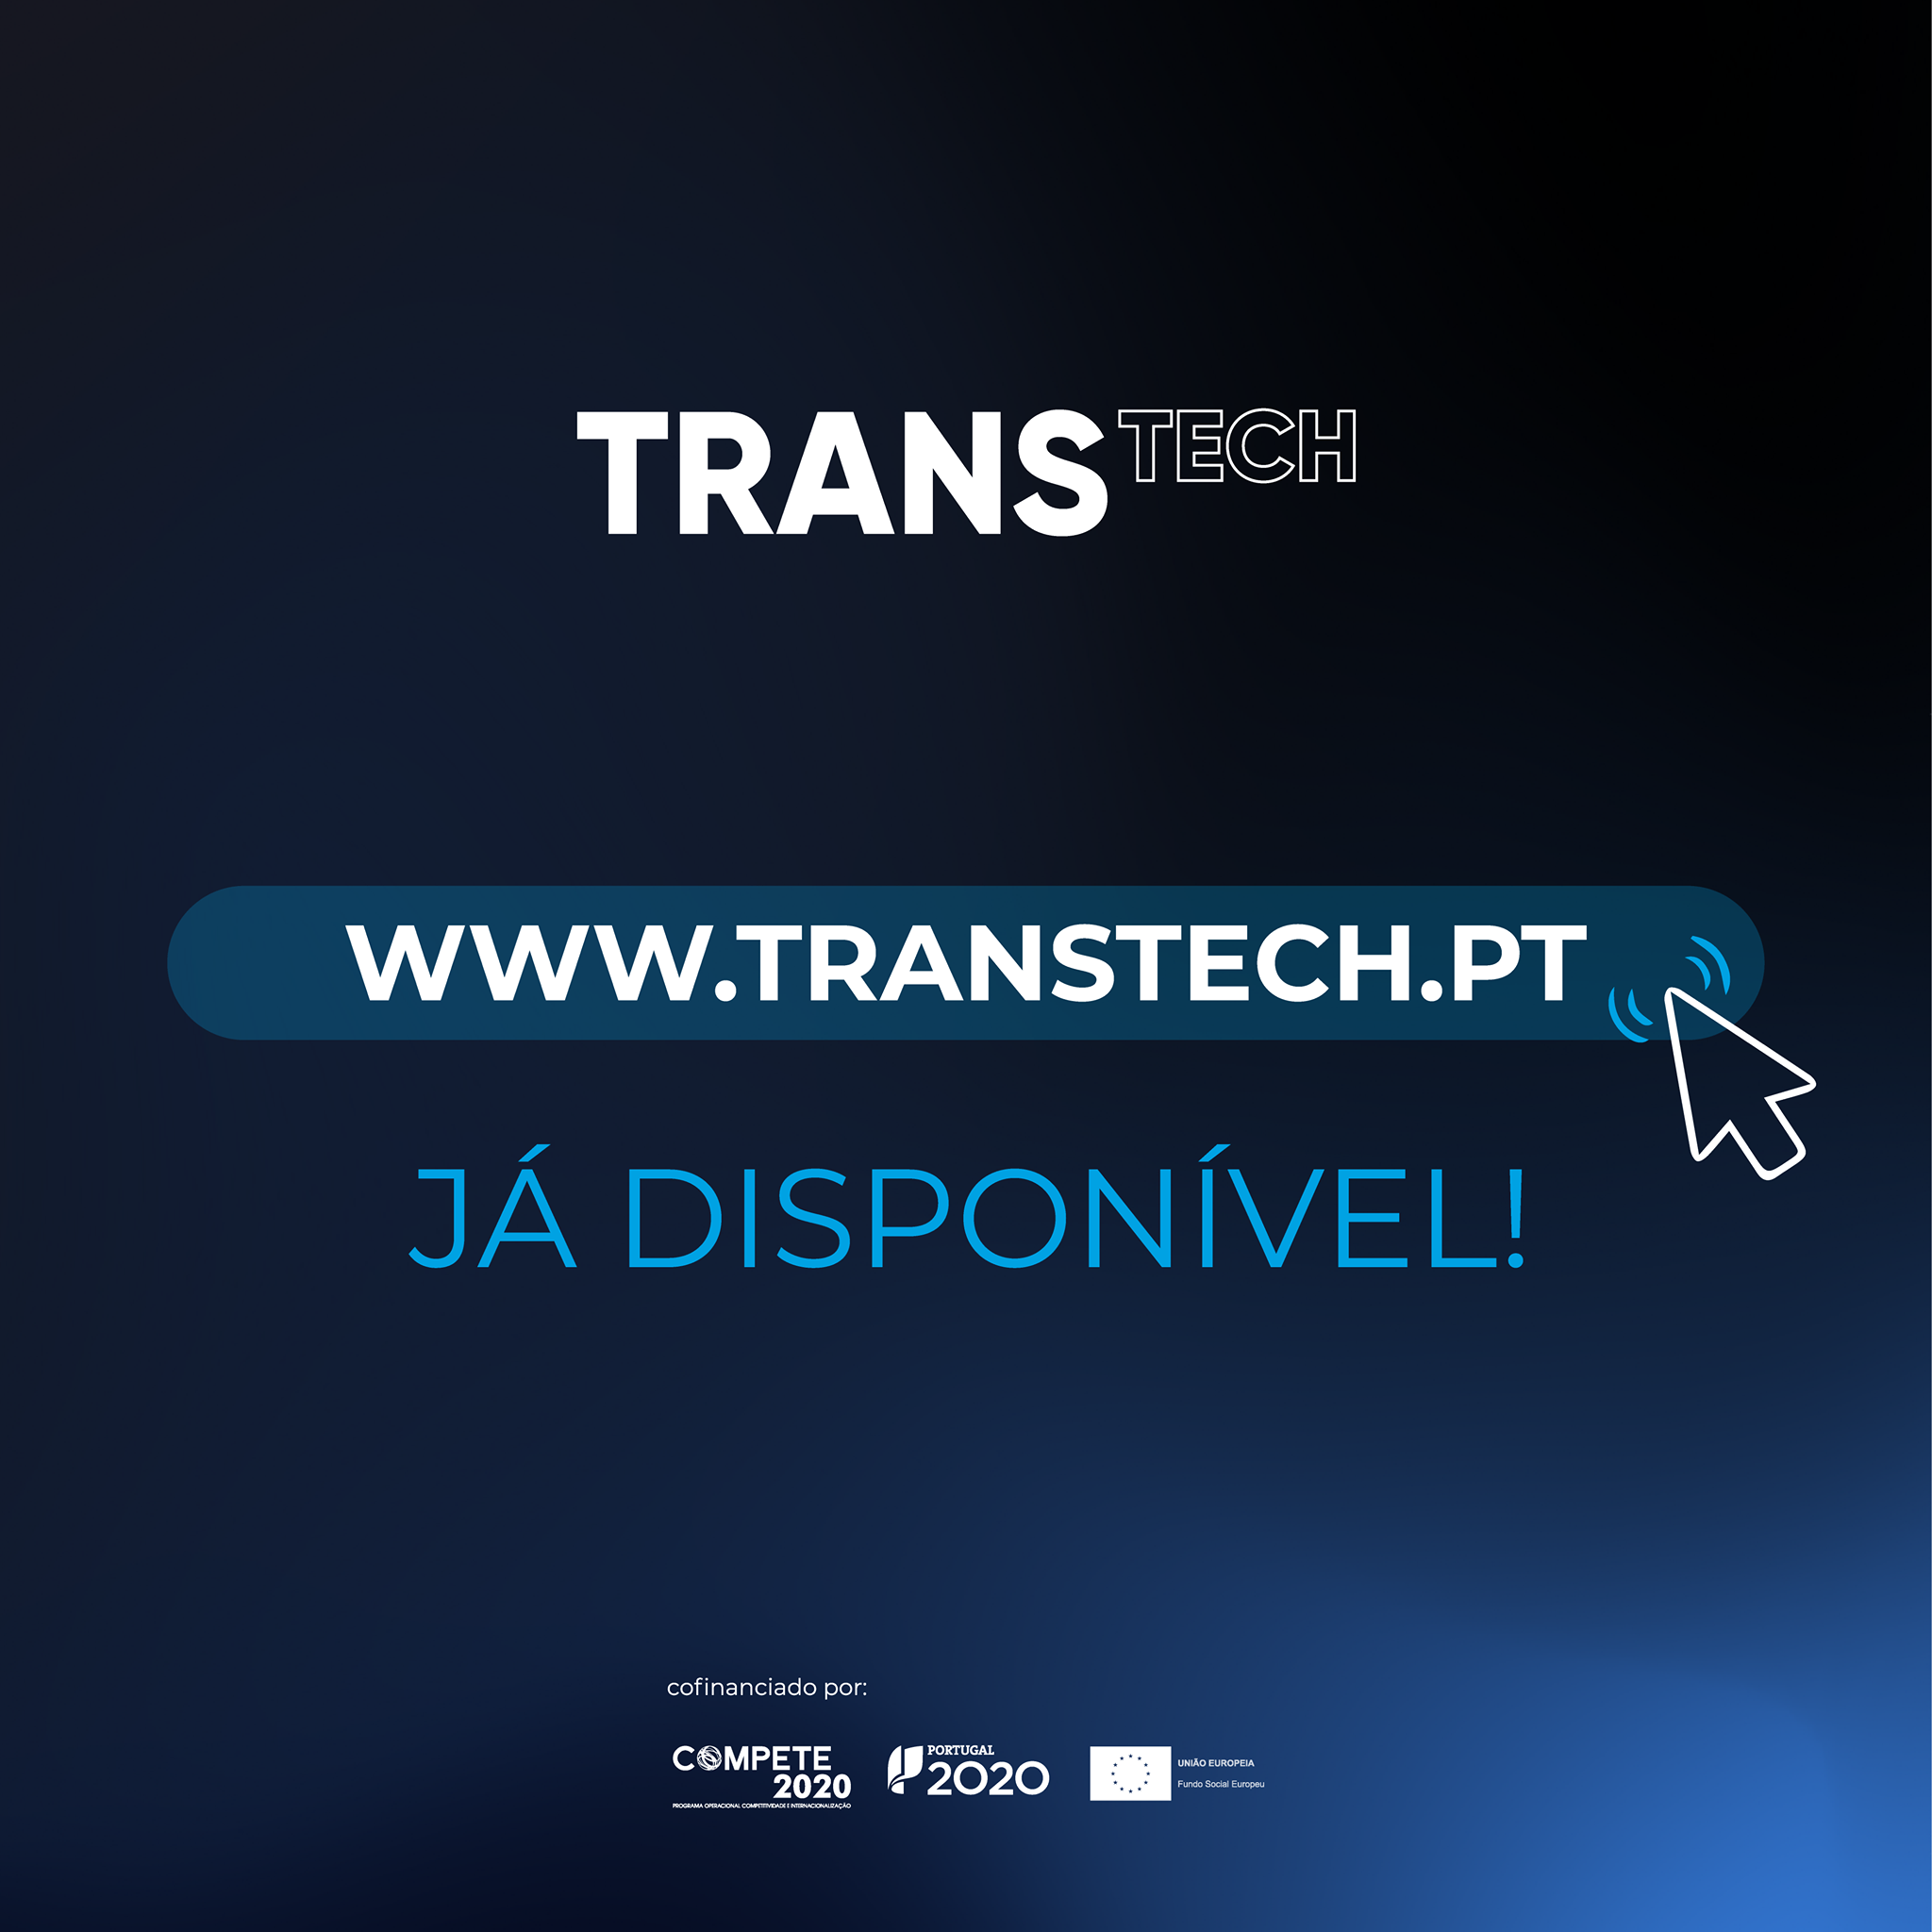 TECMAIA apoia projeto TRANSTECH para a digitalização das empresas portuguesas